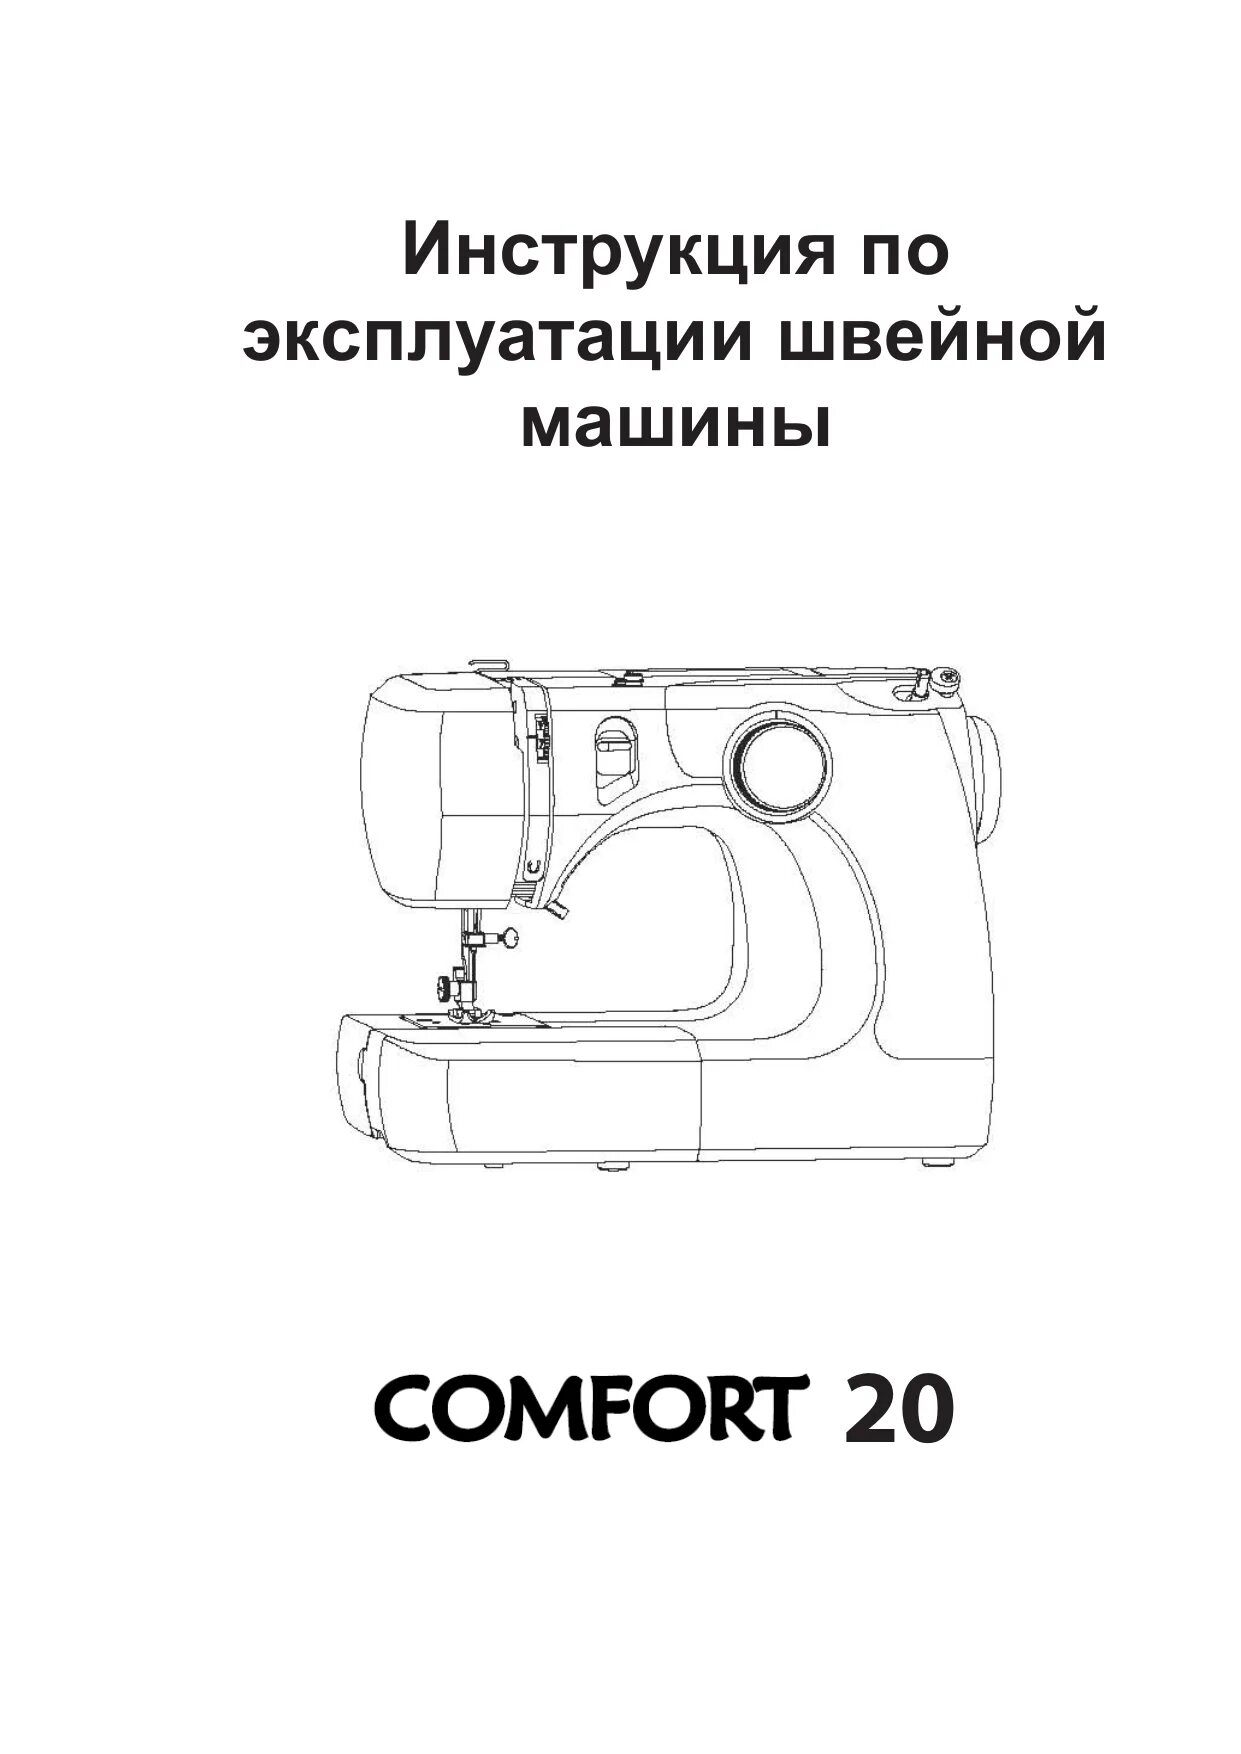 Машинка comfort 15. Швейная машинка Comfort 15. Швейная машина Comfort 15 инструкция. Инструкция швейной машинки комфорт. Схема для швейной машинки комфорт.